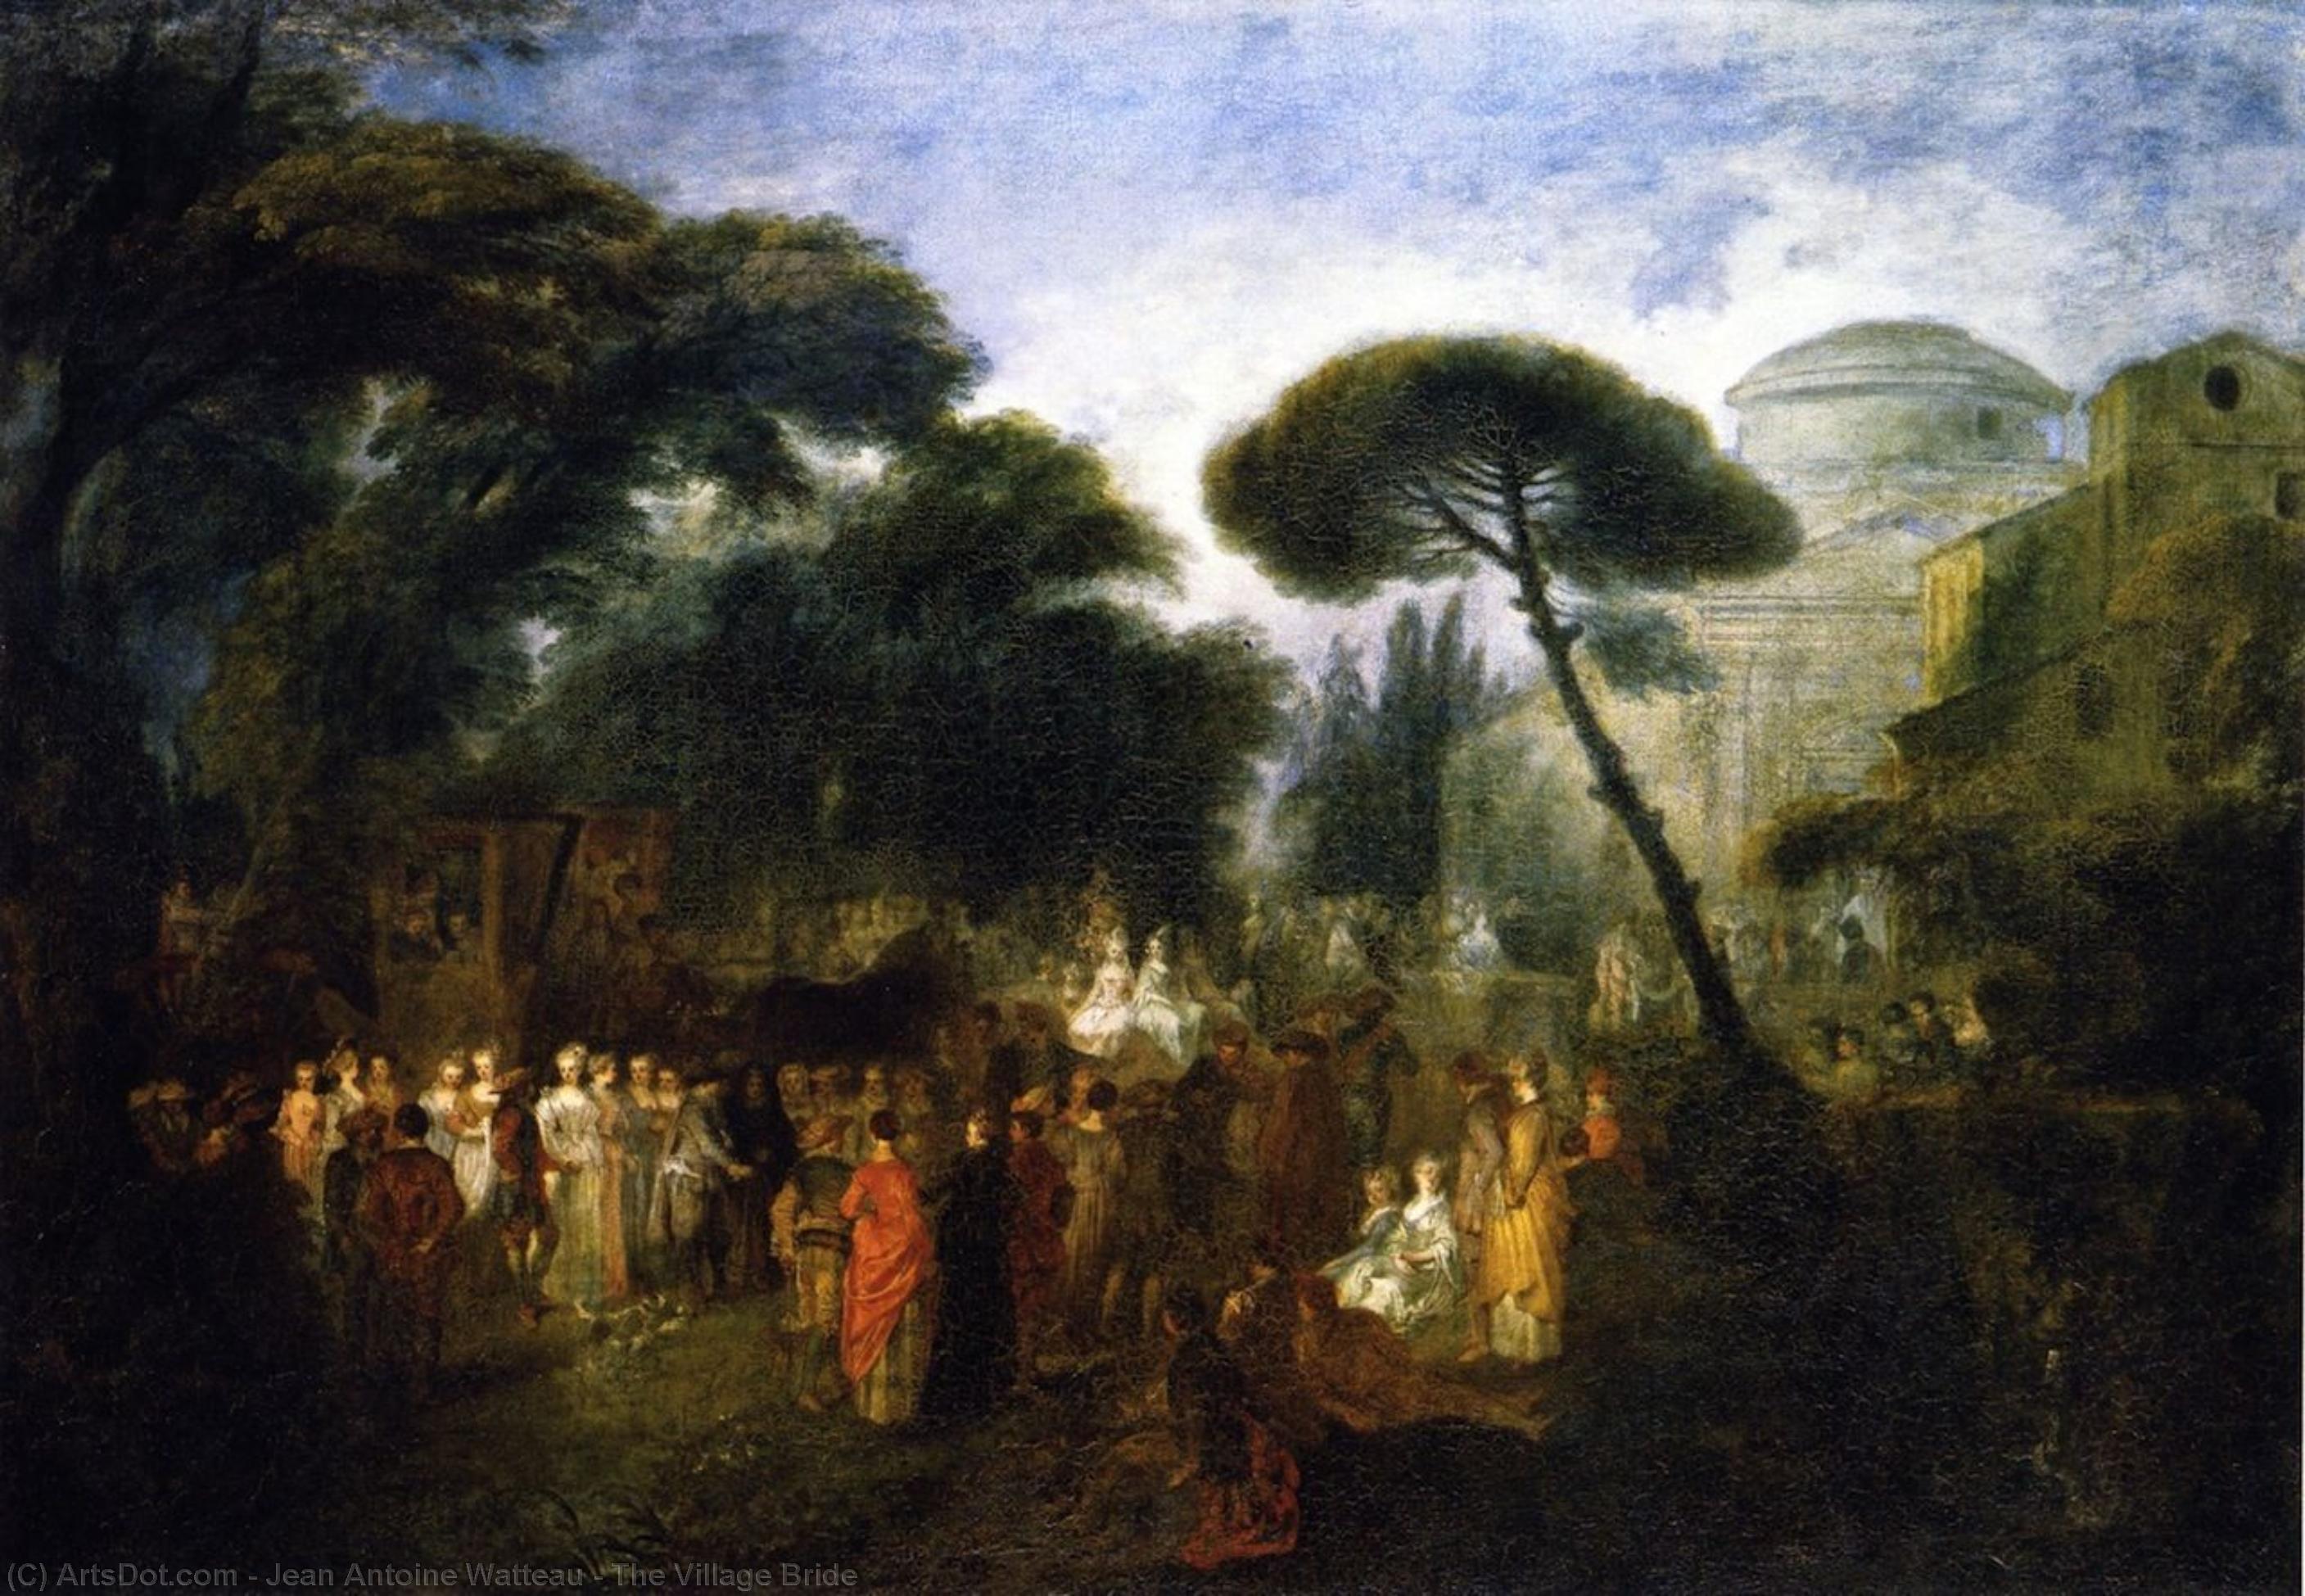 WikiOO.org - Enciclopedia of Fine Arts - Pictura, lucrări de artă Jean Antoine Watteau - The Village Bride